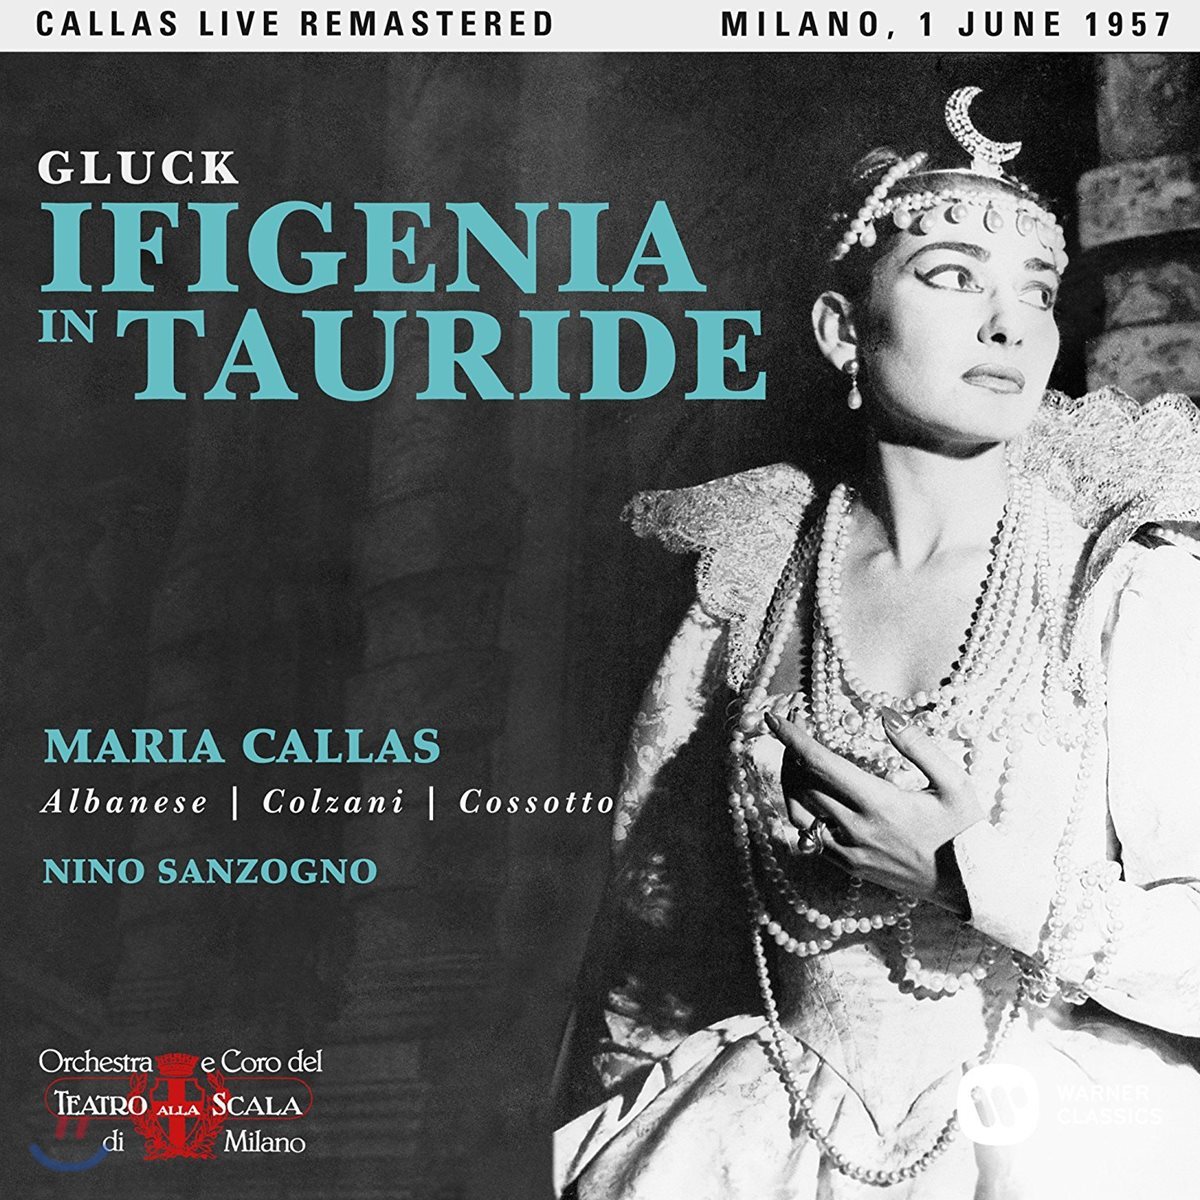 Maria Callas / Nino Sanzogno 글룩: 타우리데의 이피게니아 - 마리아 칼라스, 니노 산초뇨 / 1957년 밀라노 라 스칼라 실황 (Gluck: Ifigenia in Tauride)